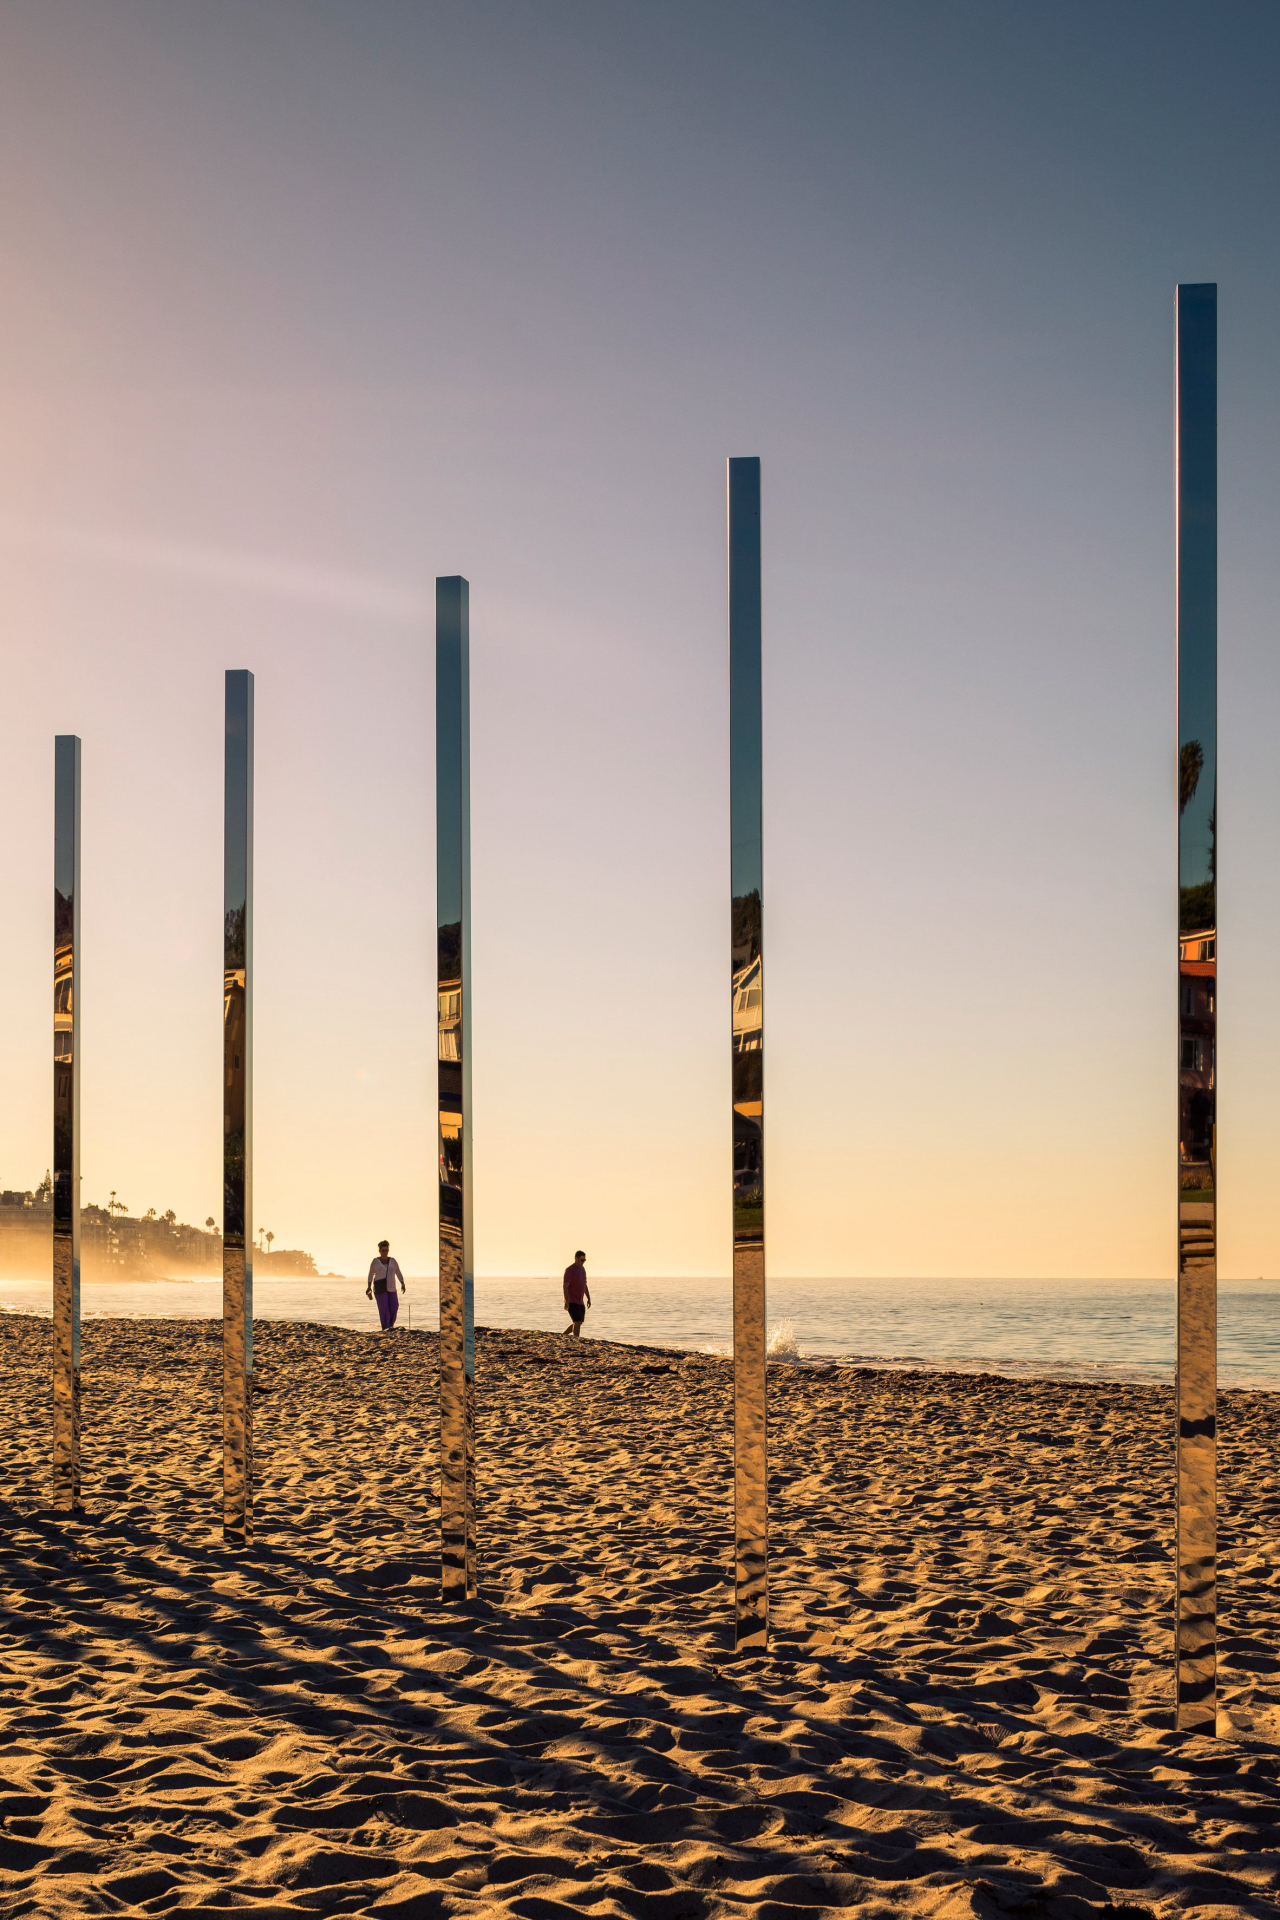 Postes alinhados em praia mudam impressão conforme ponto de vista